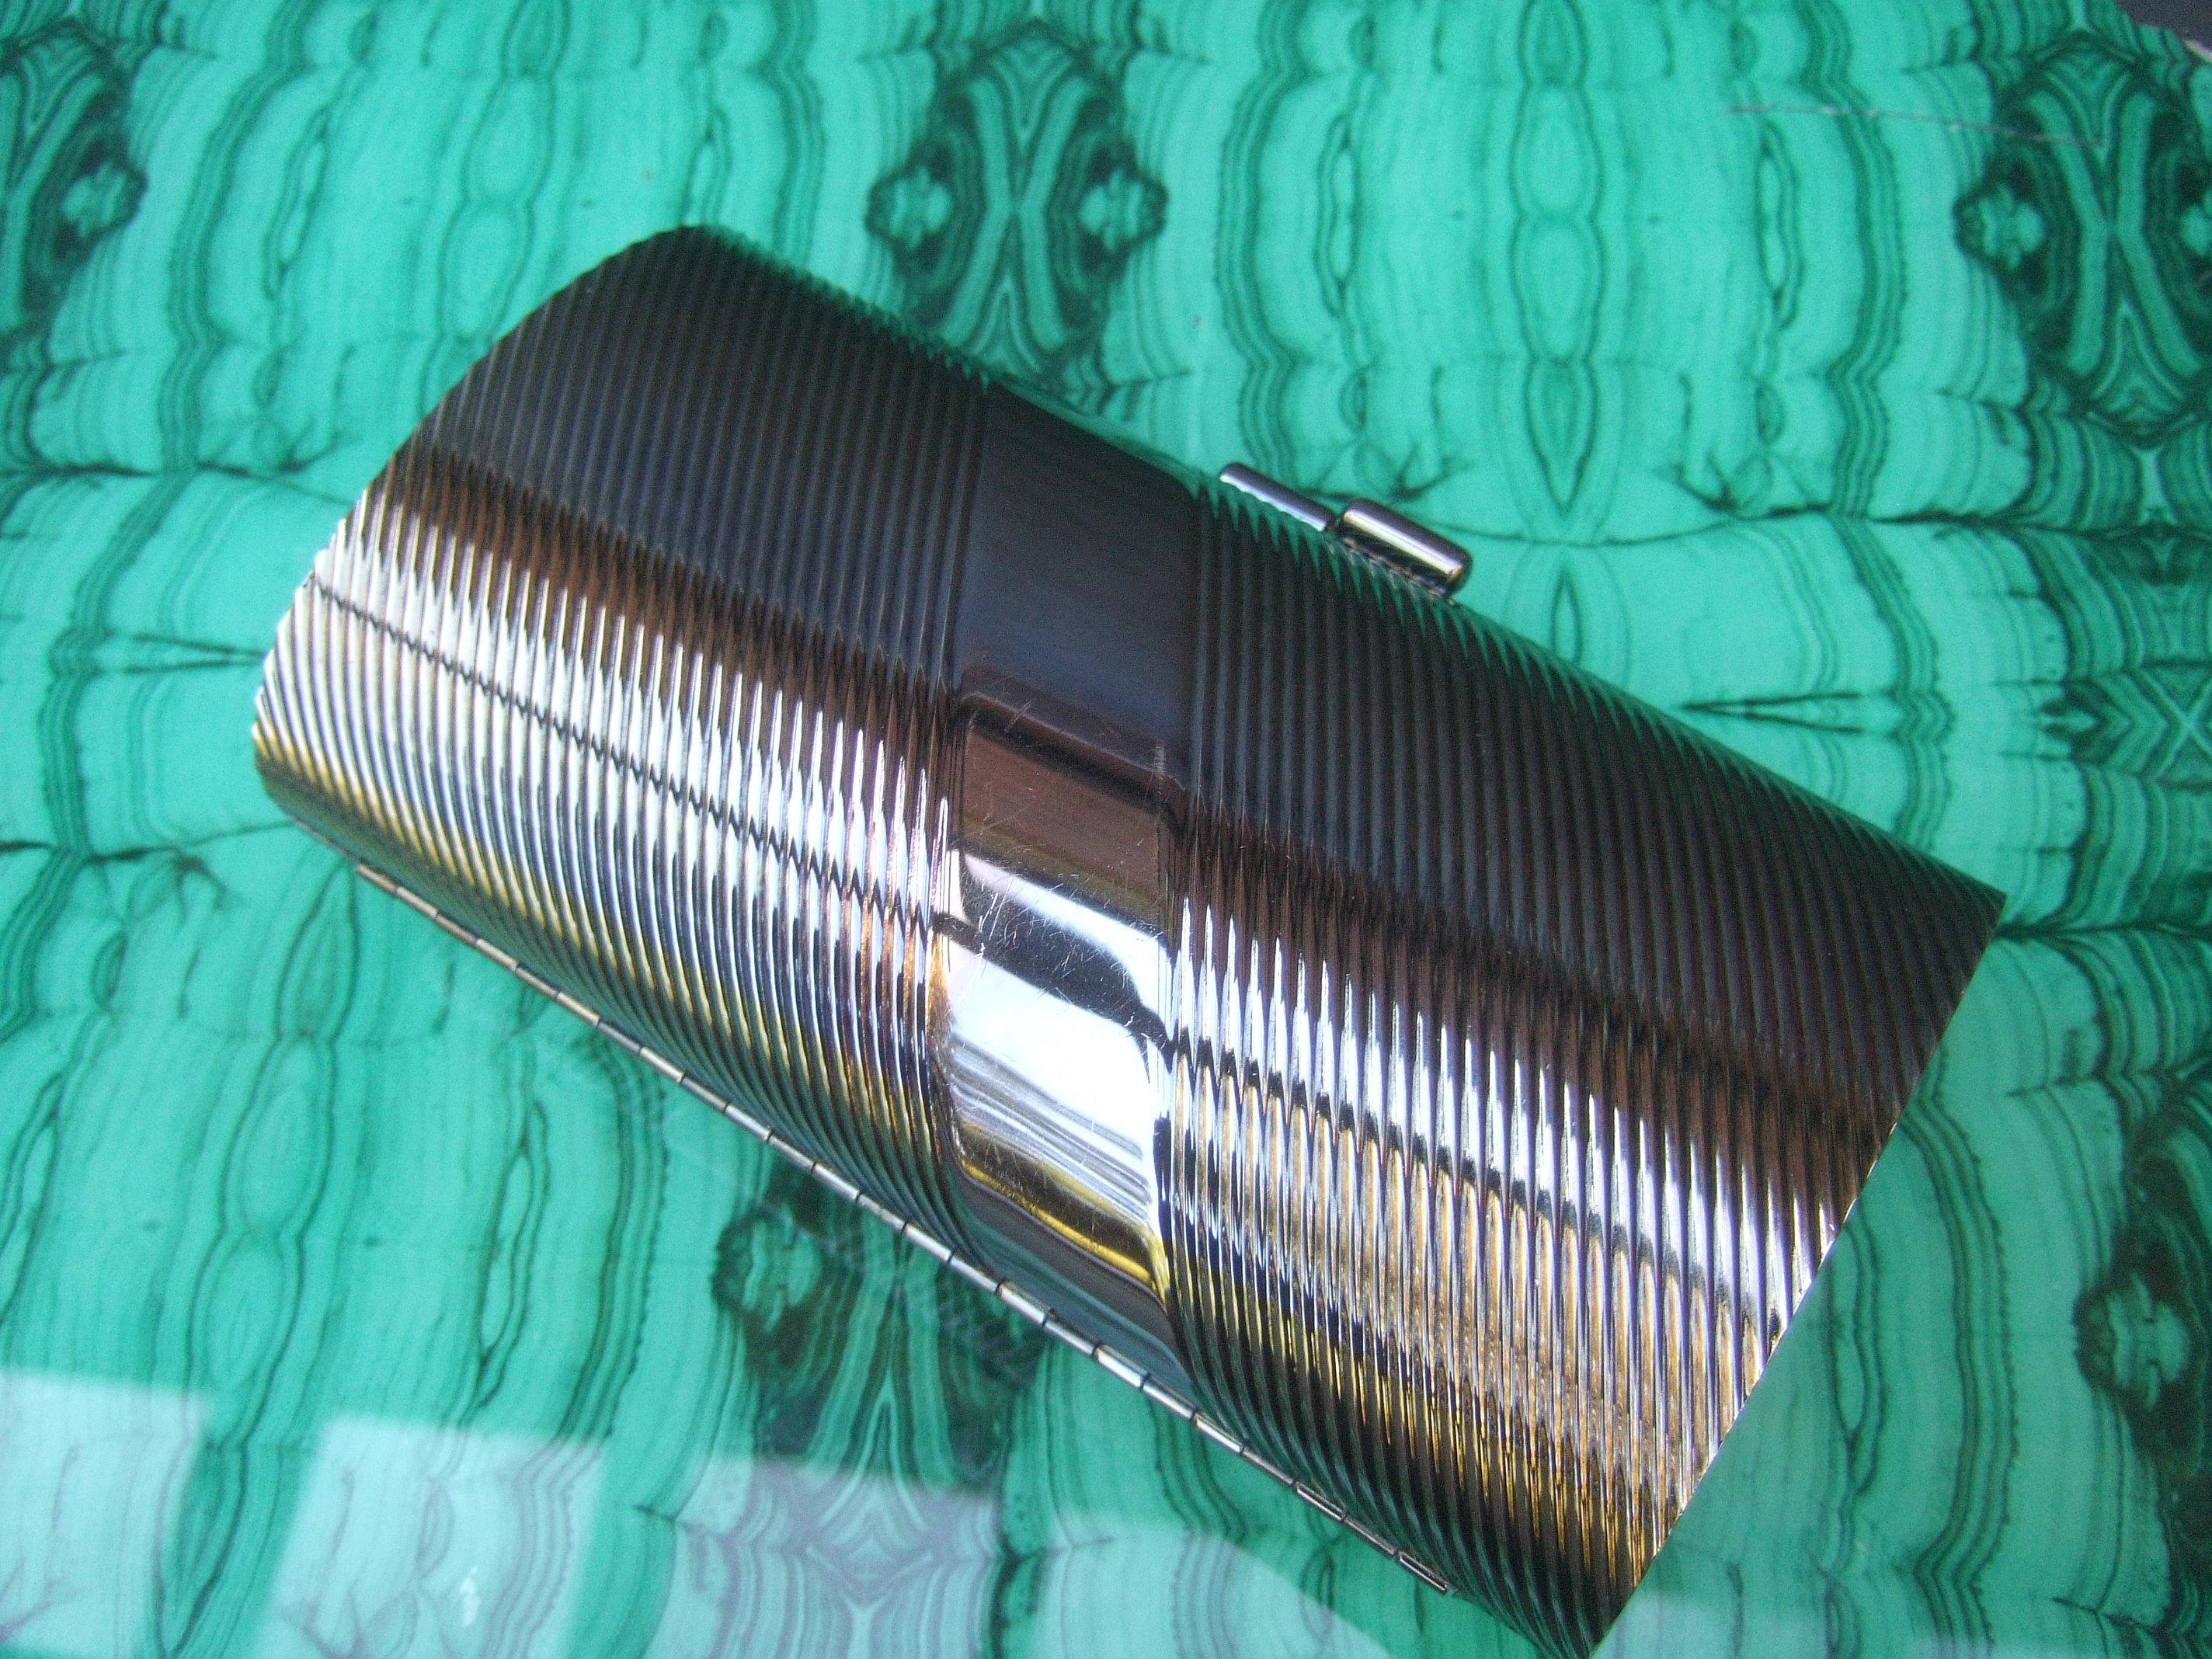 Neiman Marcus brünierte silberne Minaudiere-Abendtasche, 1980er Jahre

Die schlichte Abendtasche hat eine gewollte, gedunkelte silberne Metallpatina. Entworfen mit gerillten vertikalen Bändern in einer diagonalen Schräglage. Im Gegensatz dazu ist